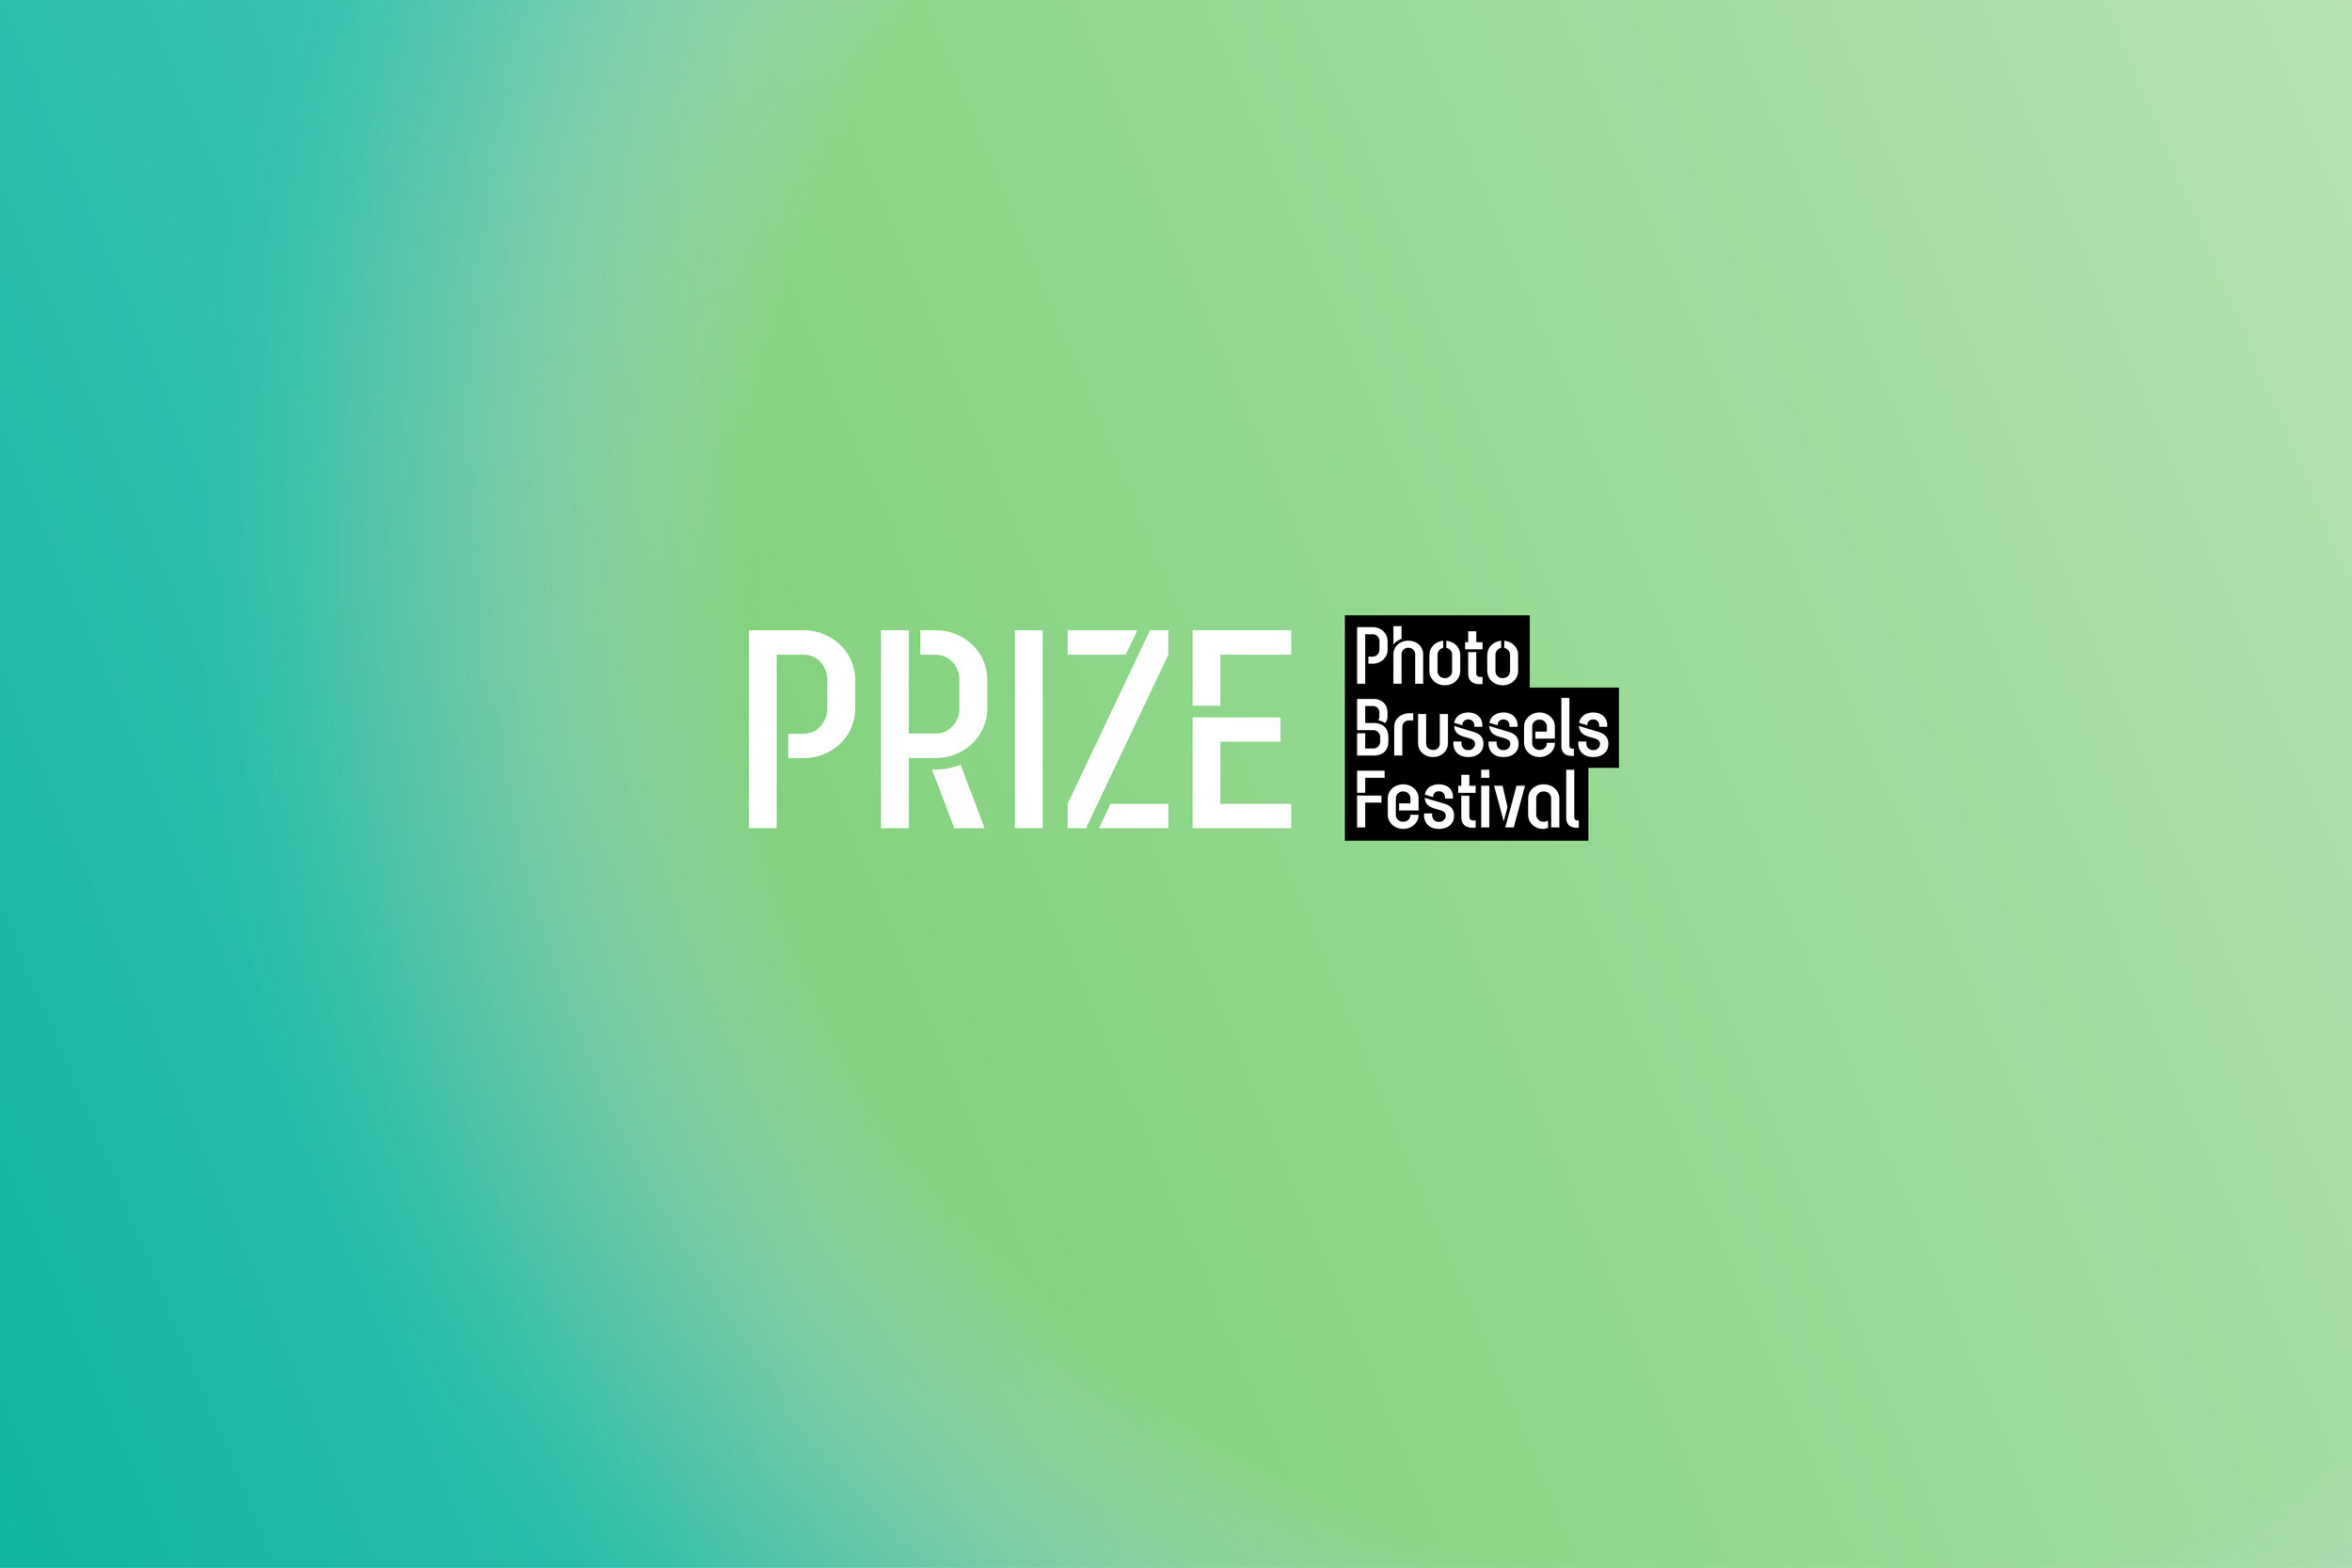 Appel à candidatures aux artistes européens dans le cadre du festival PhotoBrussels